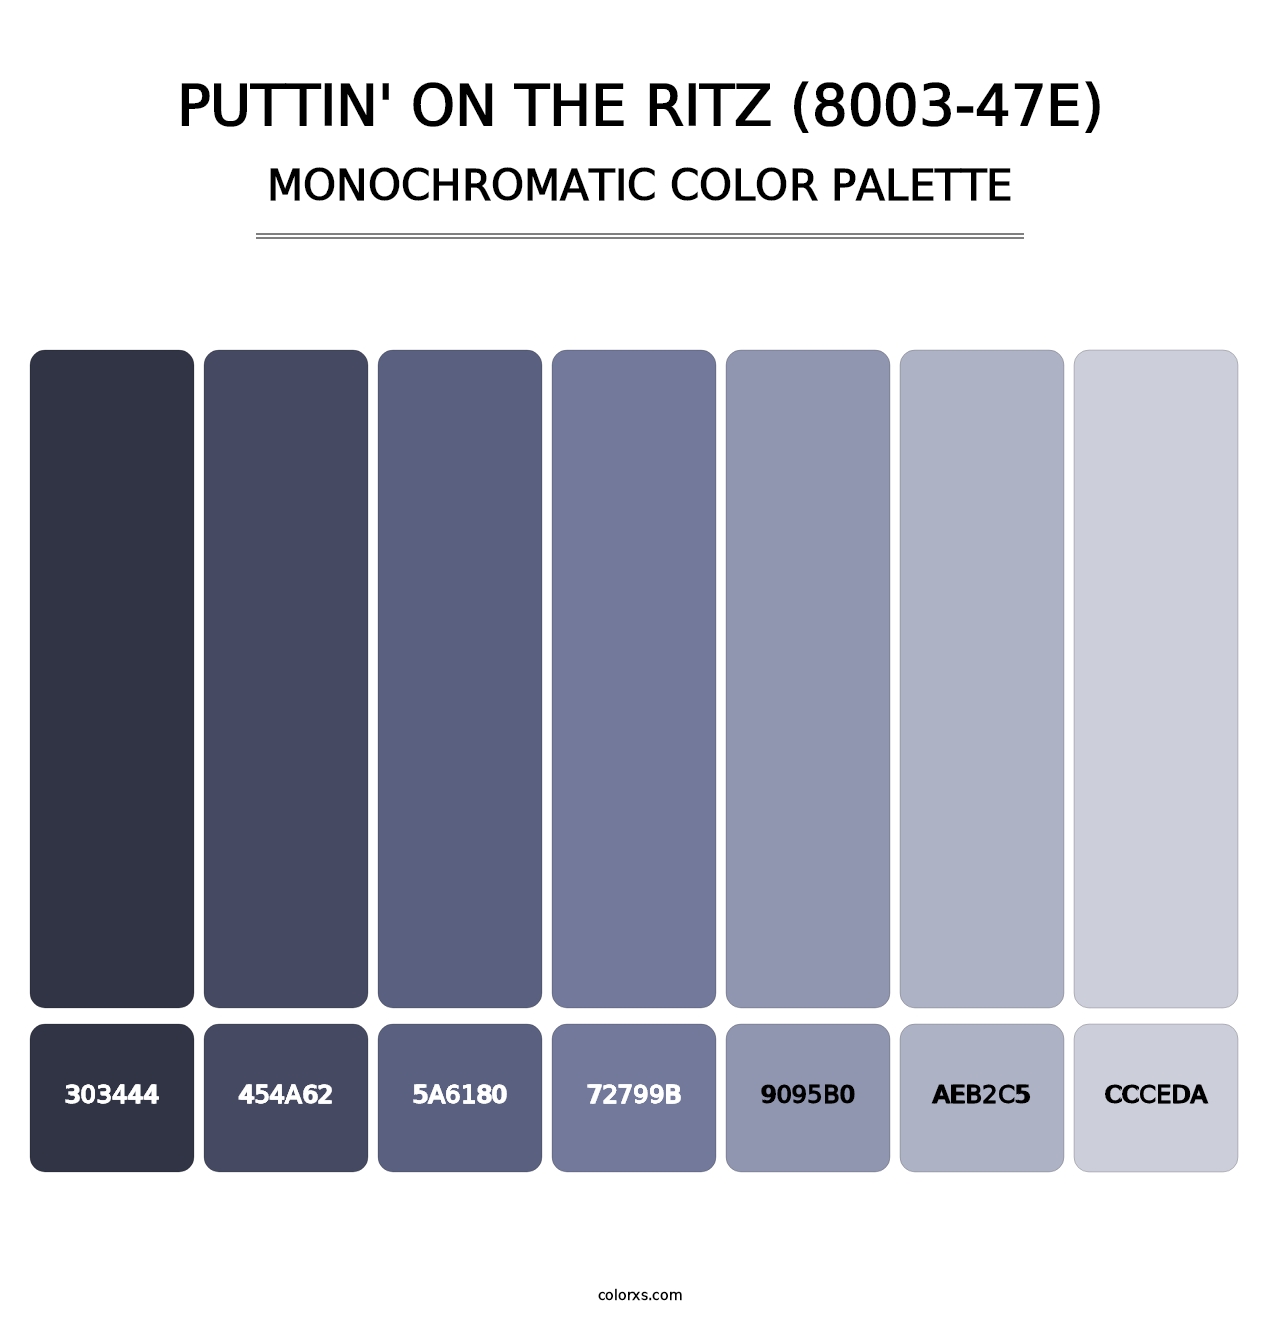 Puttin' on the Ritz (8003-47E) - Monochromatic Color Palette